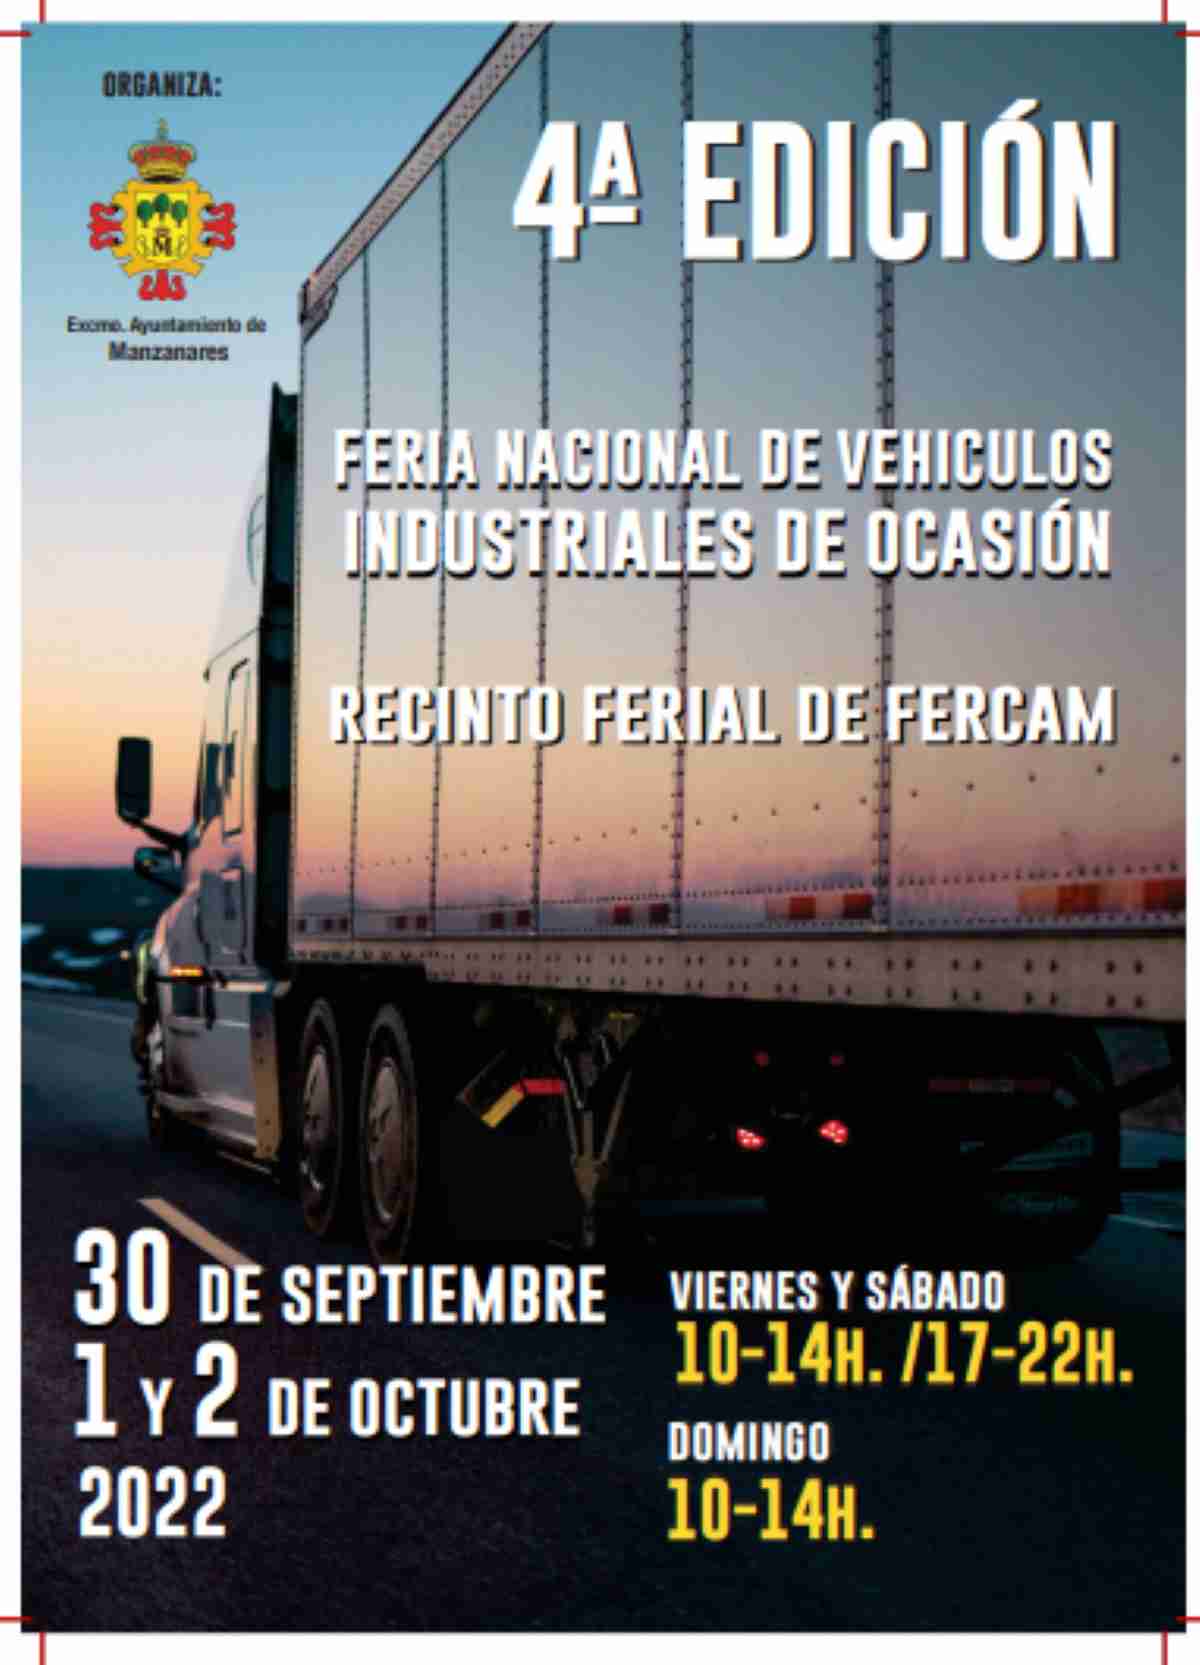 Menos Sucediendo Desconfianza 4a Feria Nacional de Vehículos Industriales de Ocasión en el Fercam en  Manzanares el 30 de septiembre 1 y 2 de octubre | Noticias de Castilla-La  Mancha